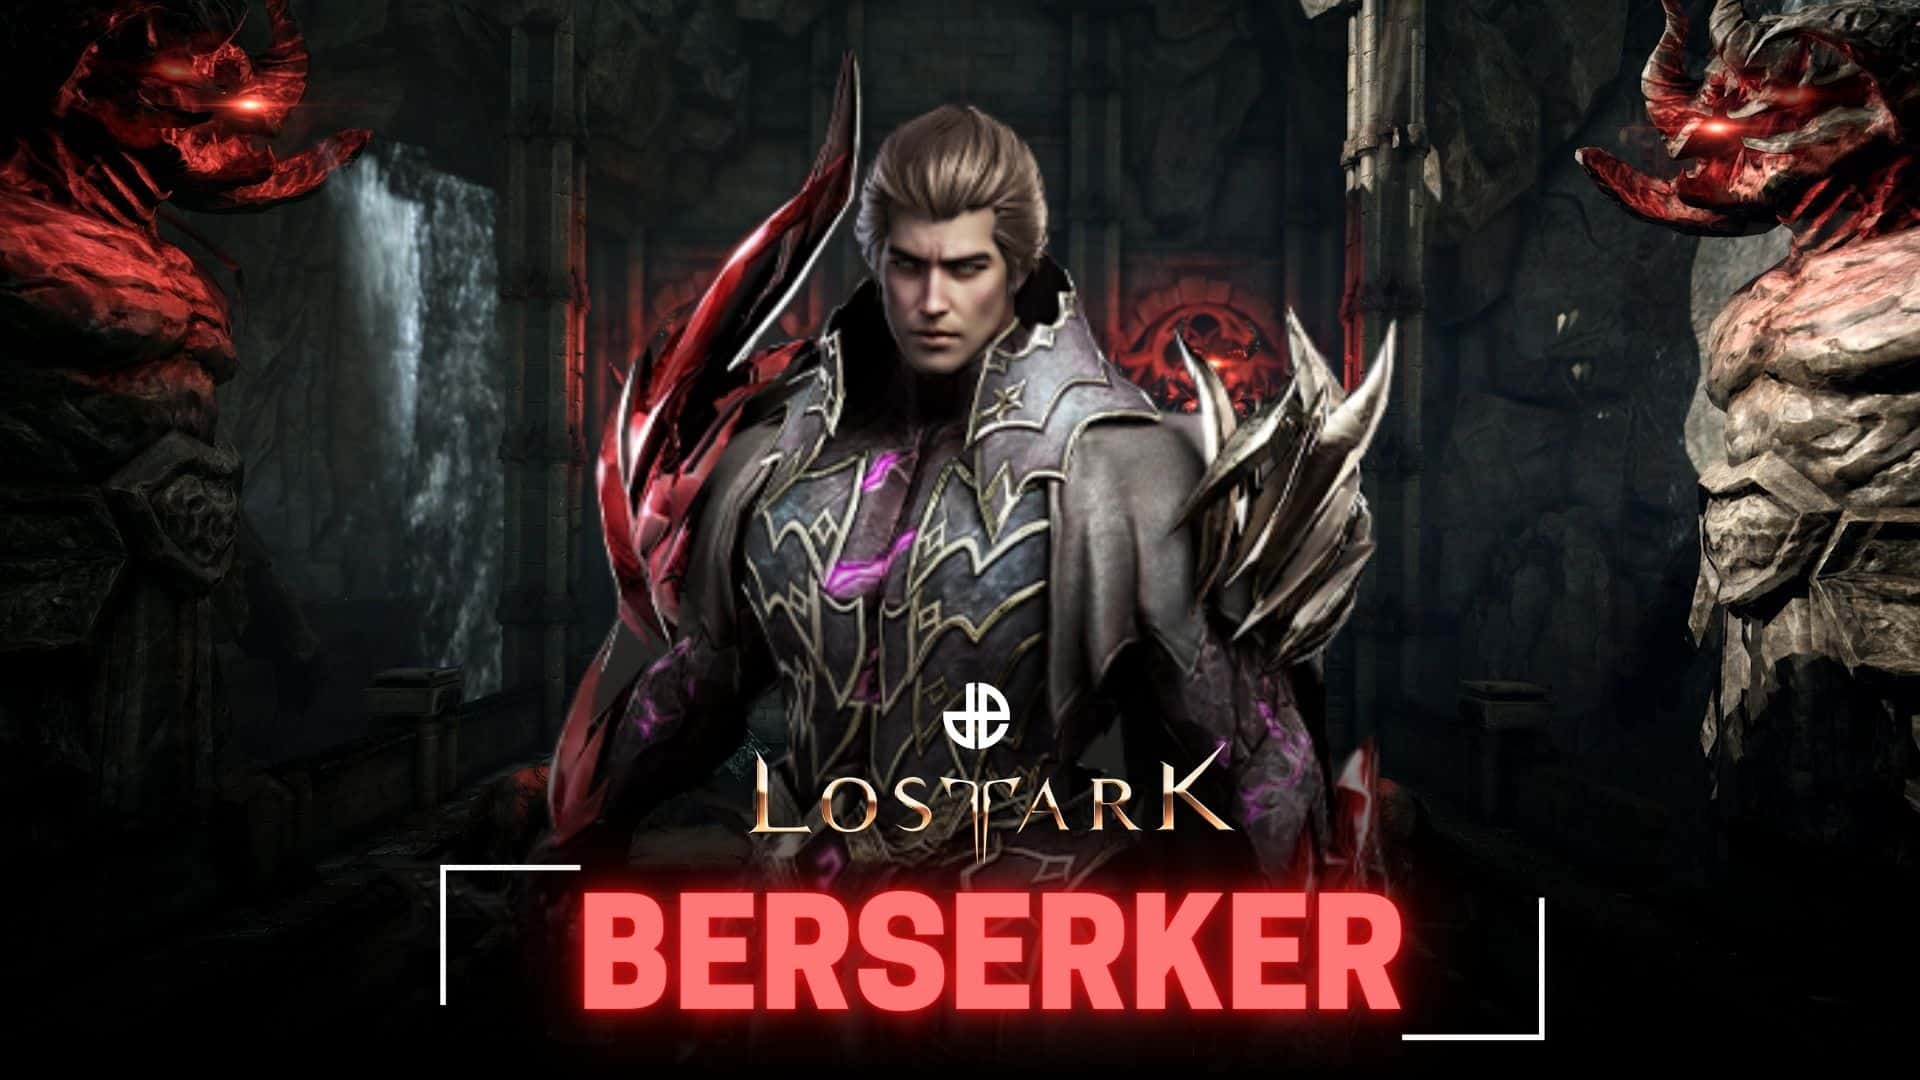 Lost Ark - Berserker PVE/PVP Stat/Engrave/Build 05.16.2020 